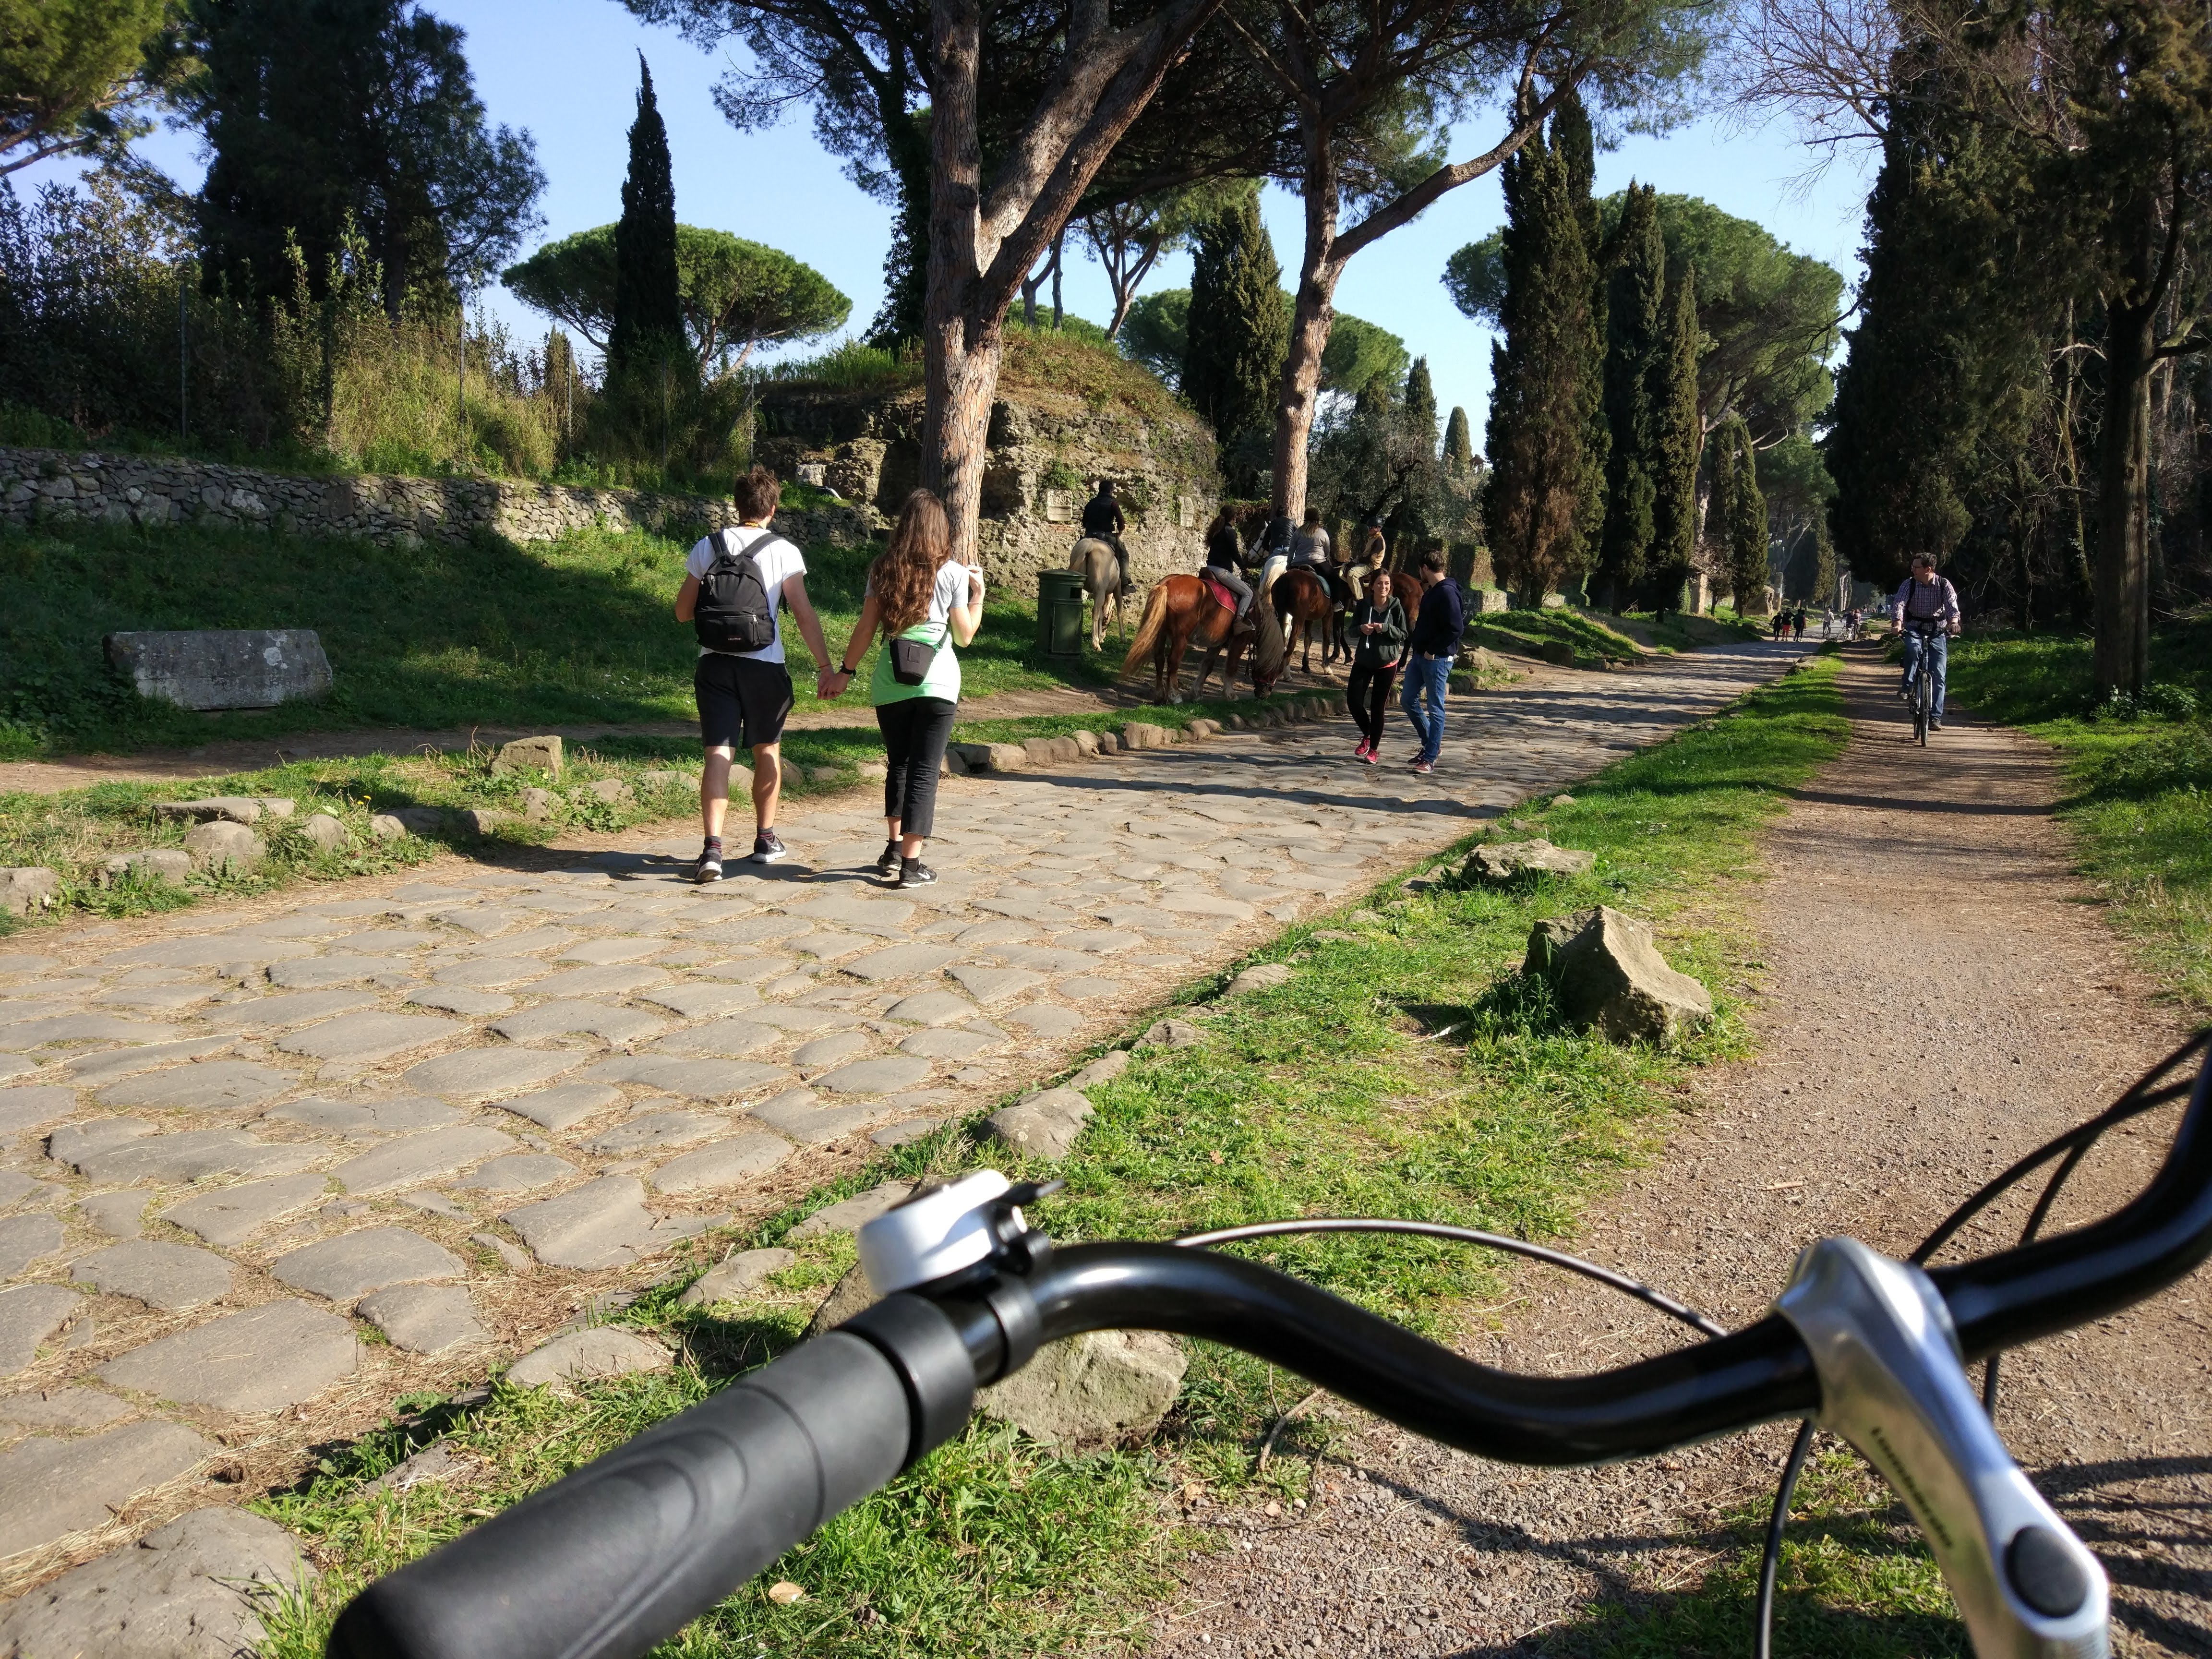 Incontri insoliti passeggiando in bicicletta in Via Appia Antica a Roma